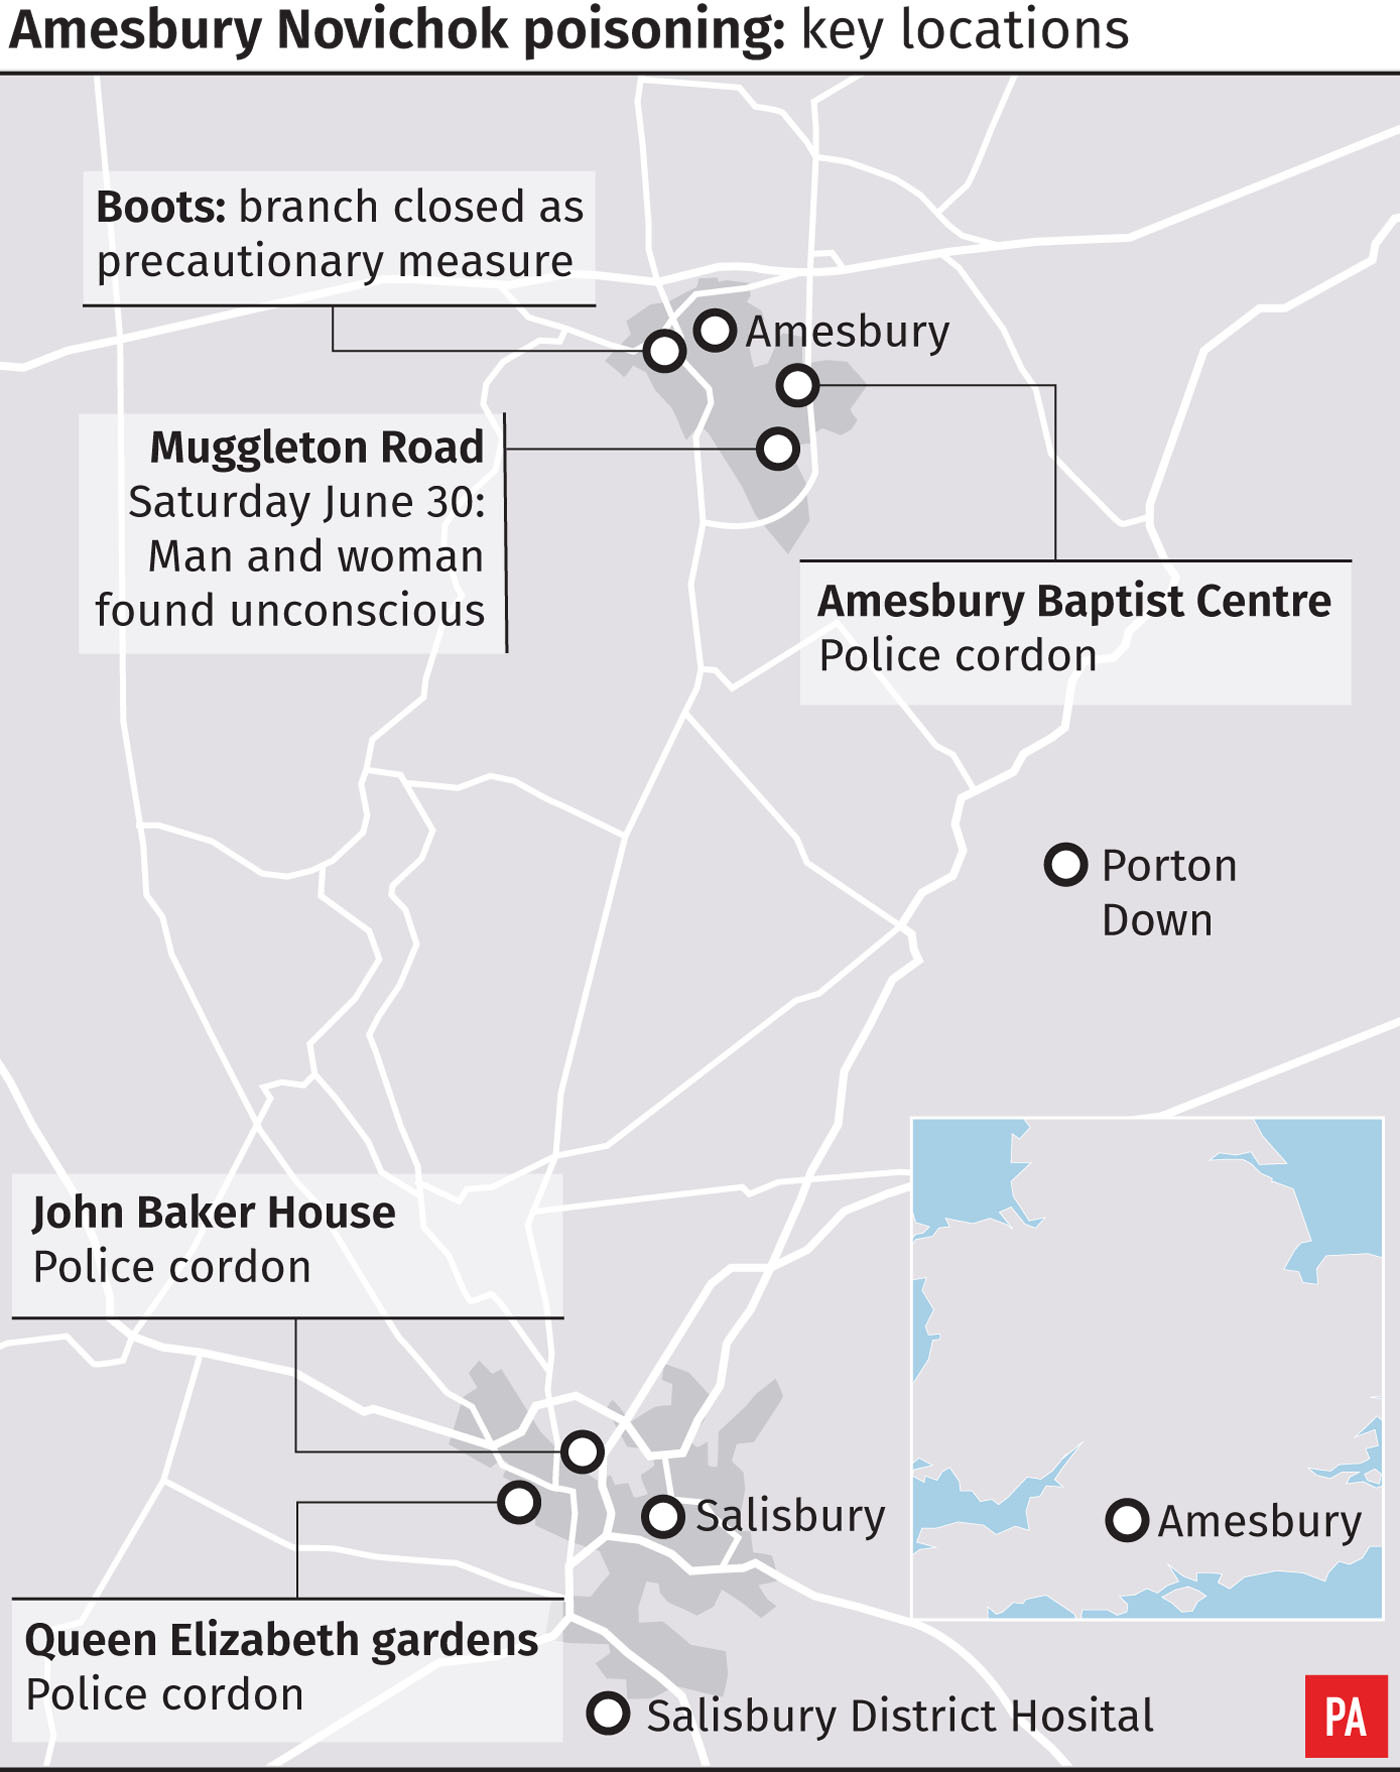 Amesbury Novichok poisoning - key locations